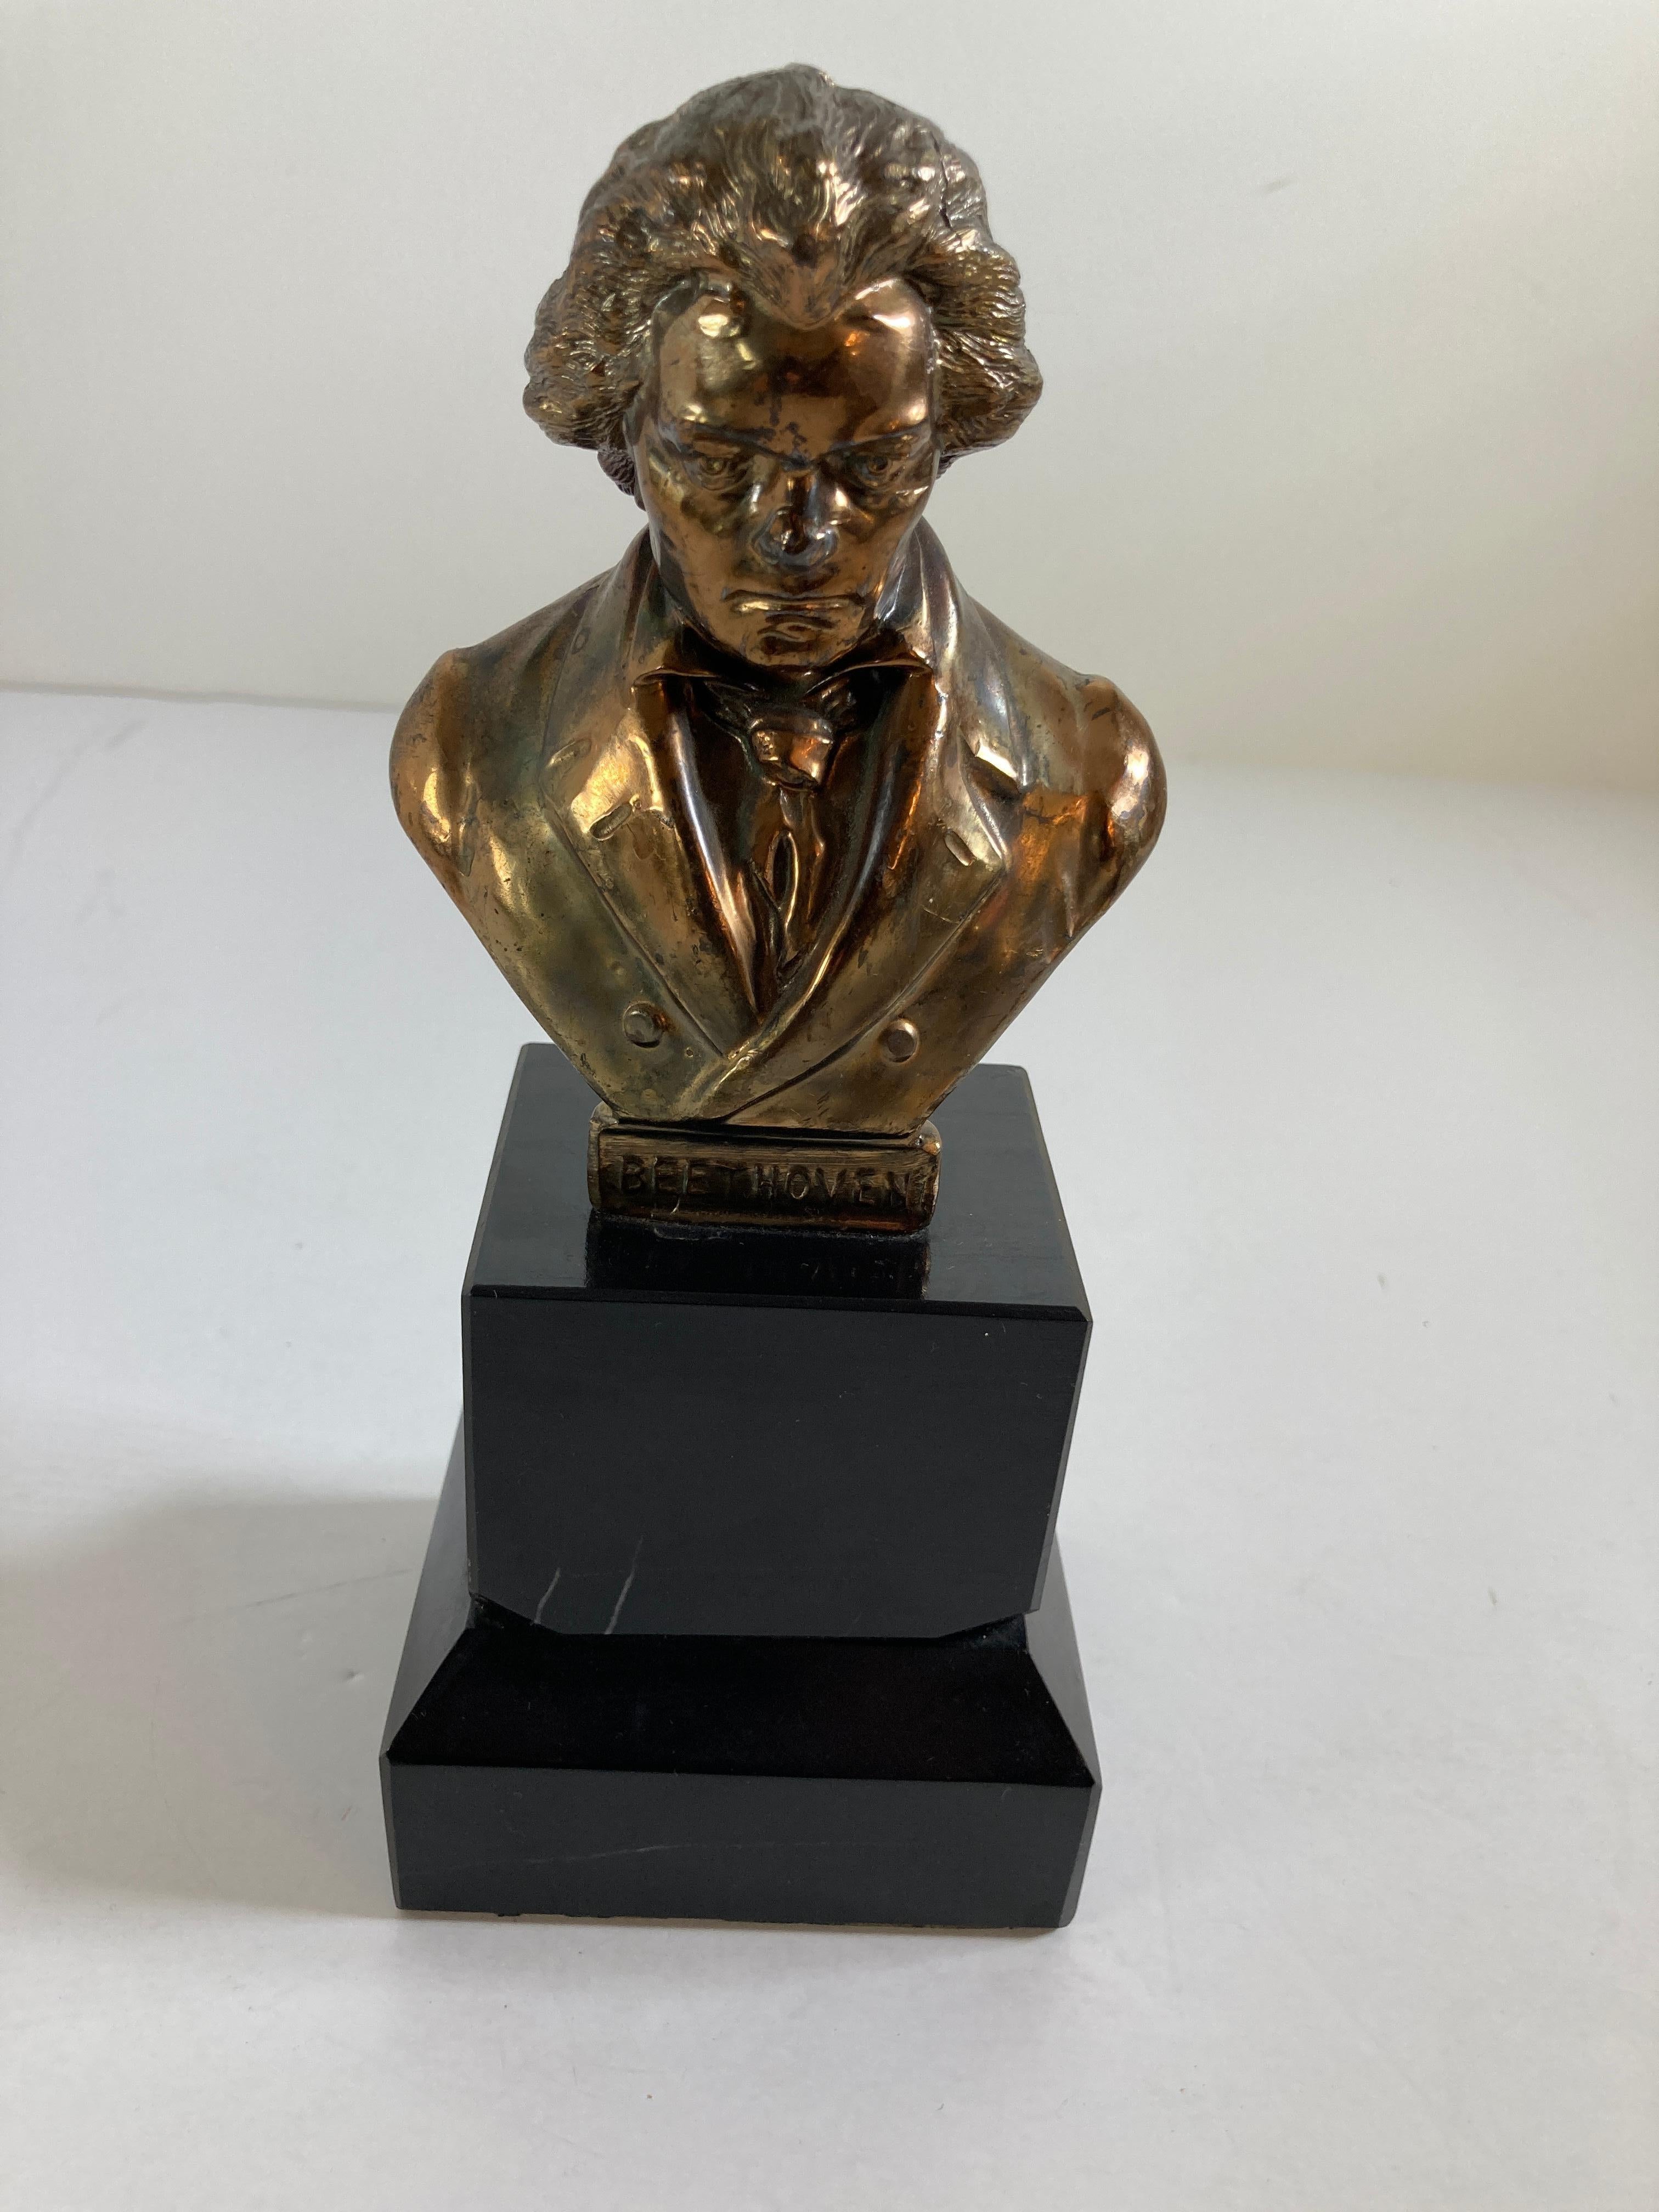 Vieille sculpture métallique en bronze de Ludwig von Beethoven sur un support en marbre.
Belle et lourde sculpture du buste d'un des plus grands musiciens de tous les temps,
vers le milieu du 20e siècle.
Il s'agit d'une sculpture vintage du